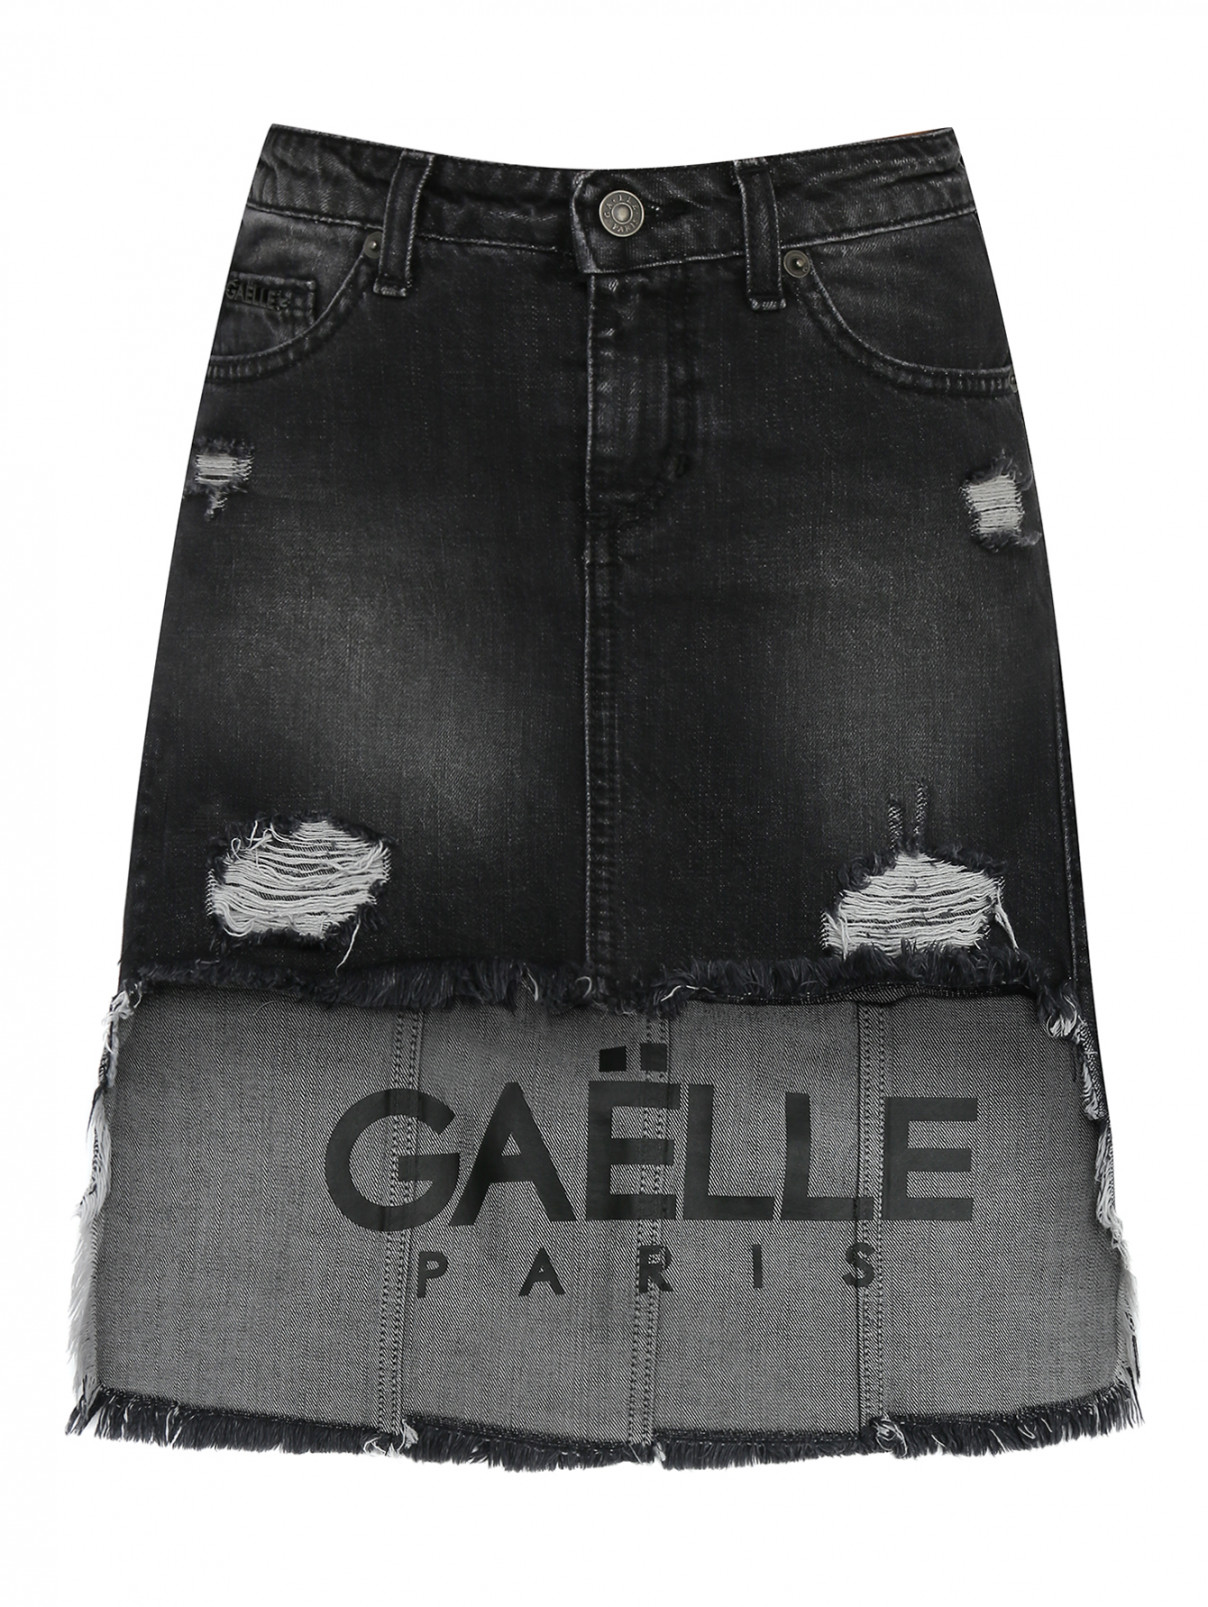 Джинсовая юбка с асимметричным низом Gaelle  –  Общий вид  – Цвет:  Серый